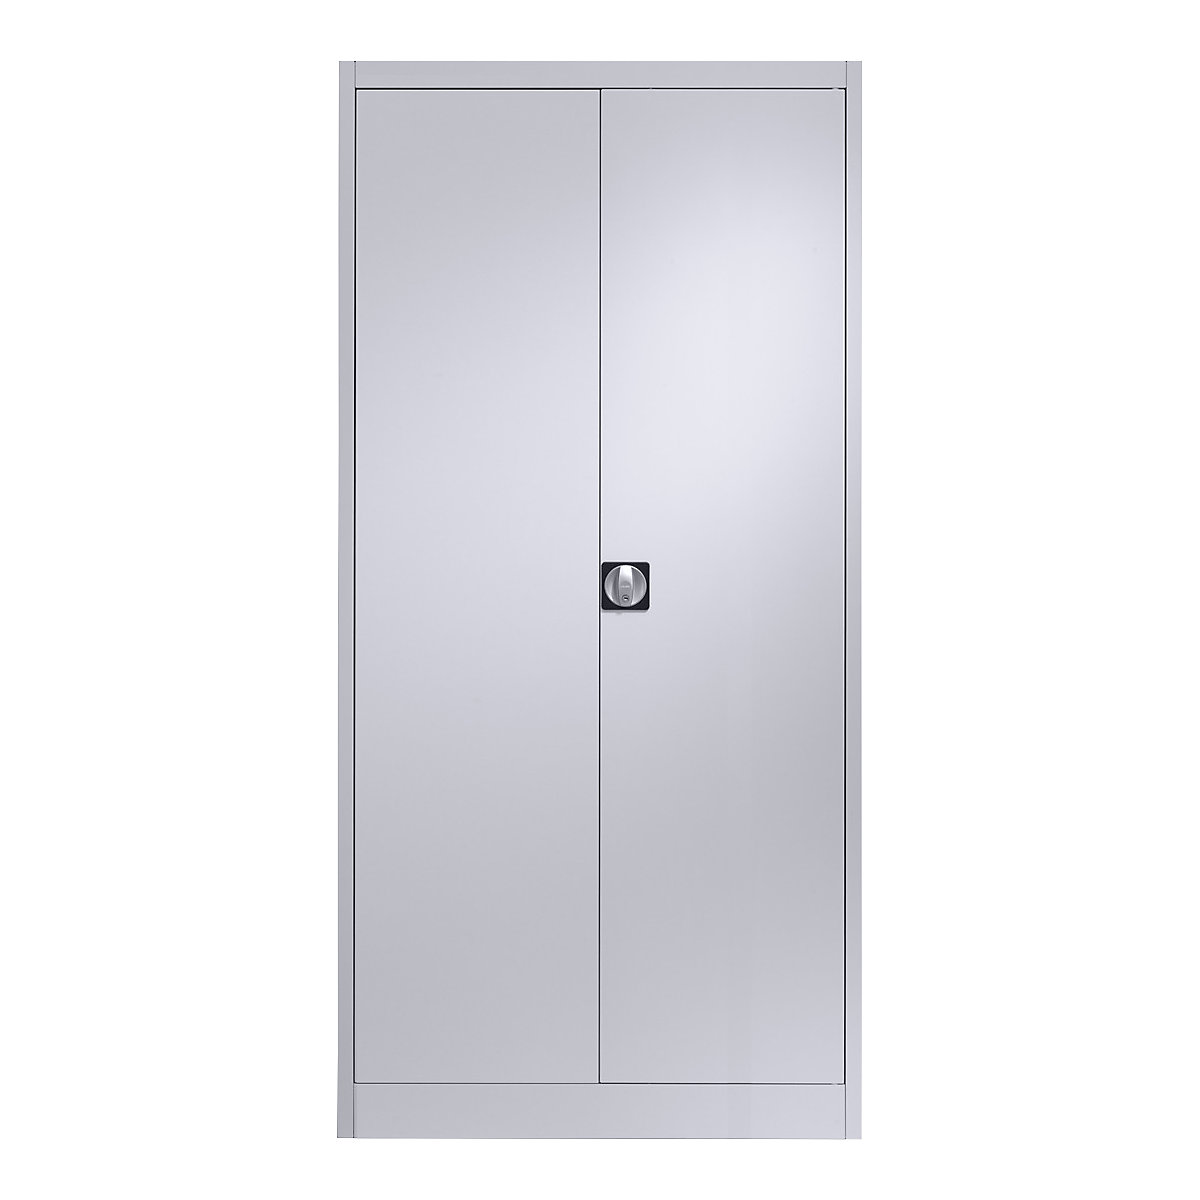 Ocelová skříň s otočnými dveřmi – mauser, 4 police, h 500 mm, bílá hliníková-5